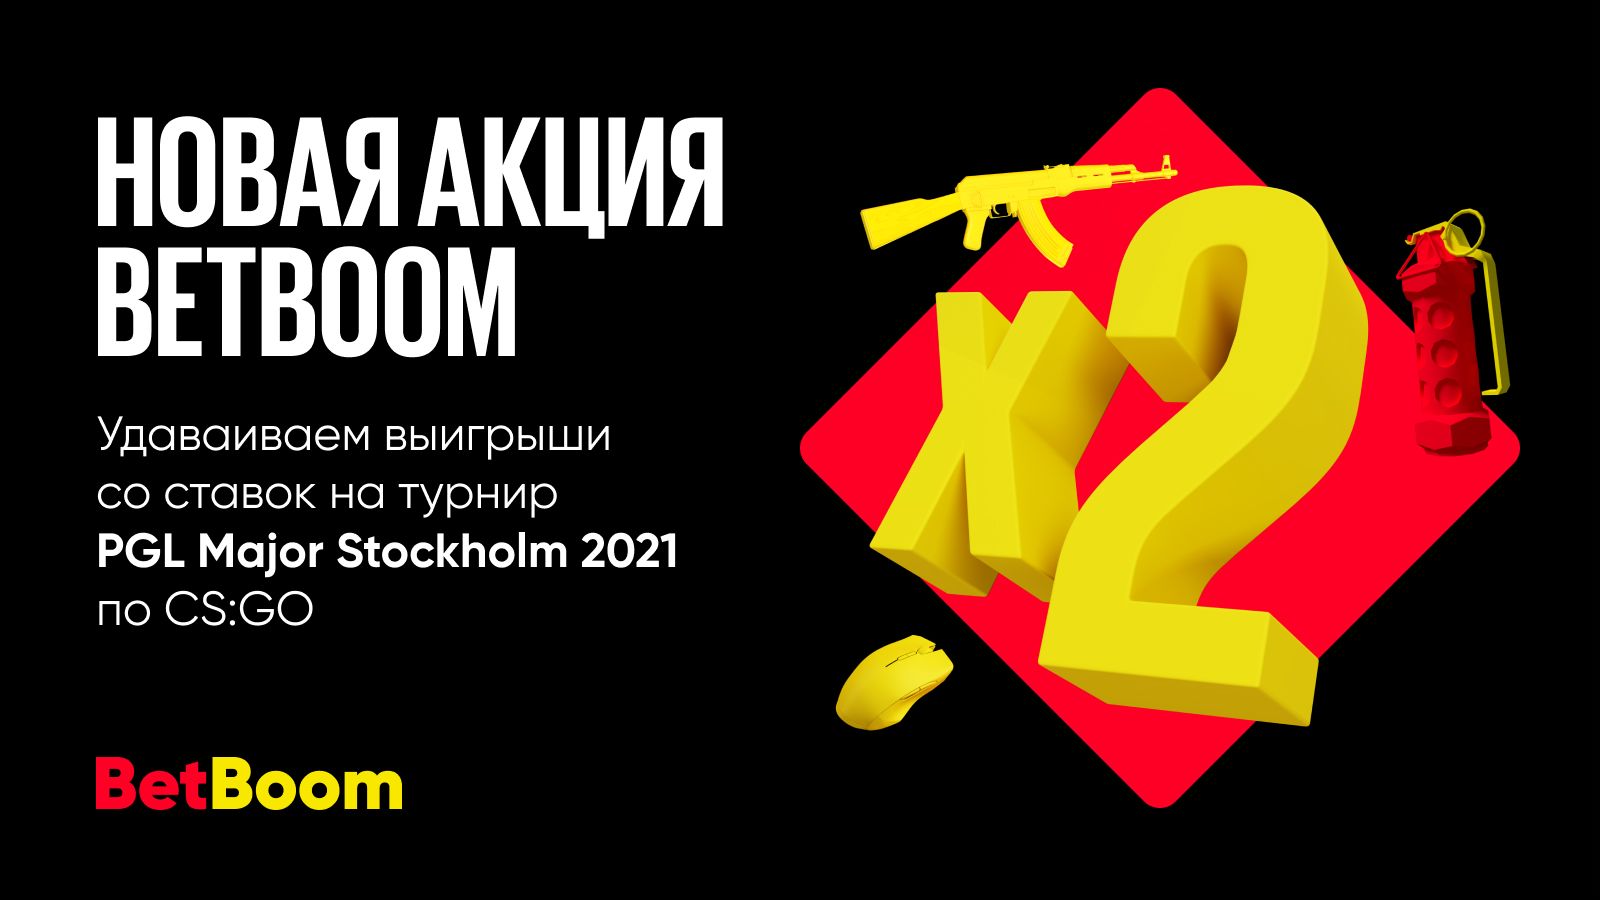 Счастливая ставка на PGL Major Stockholm — новая акция от BetBoom